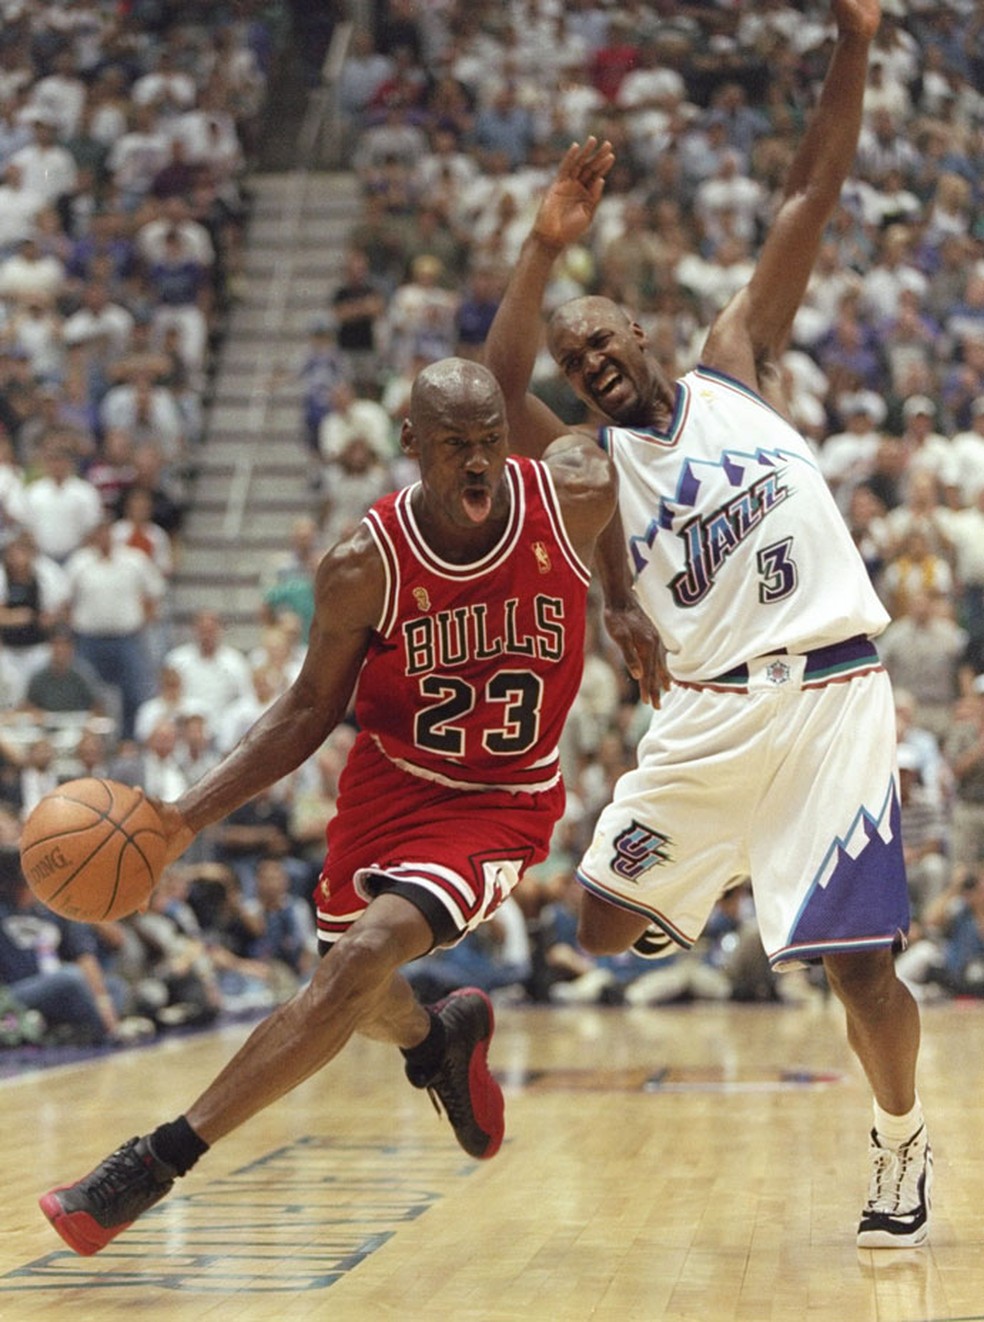 Os 5 games mais legais de basquete para embalar as finais da NBA 